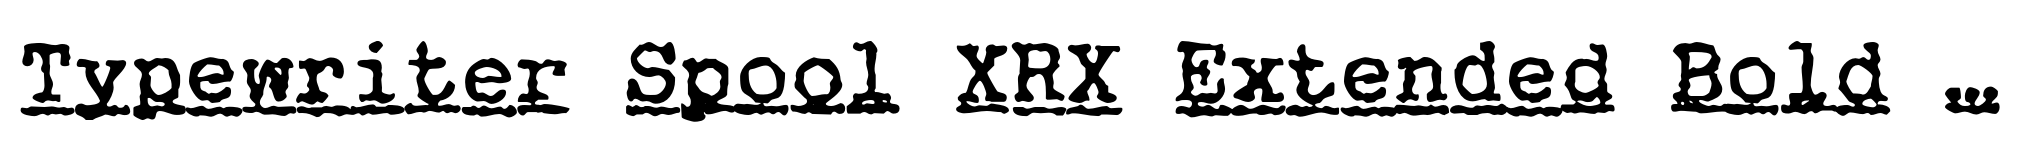 Typewriter Spool XRX Extended Bold Italic image